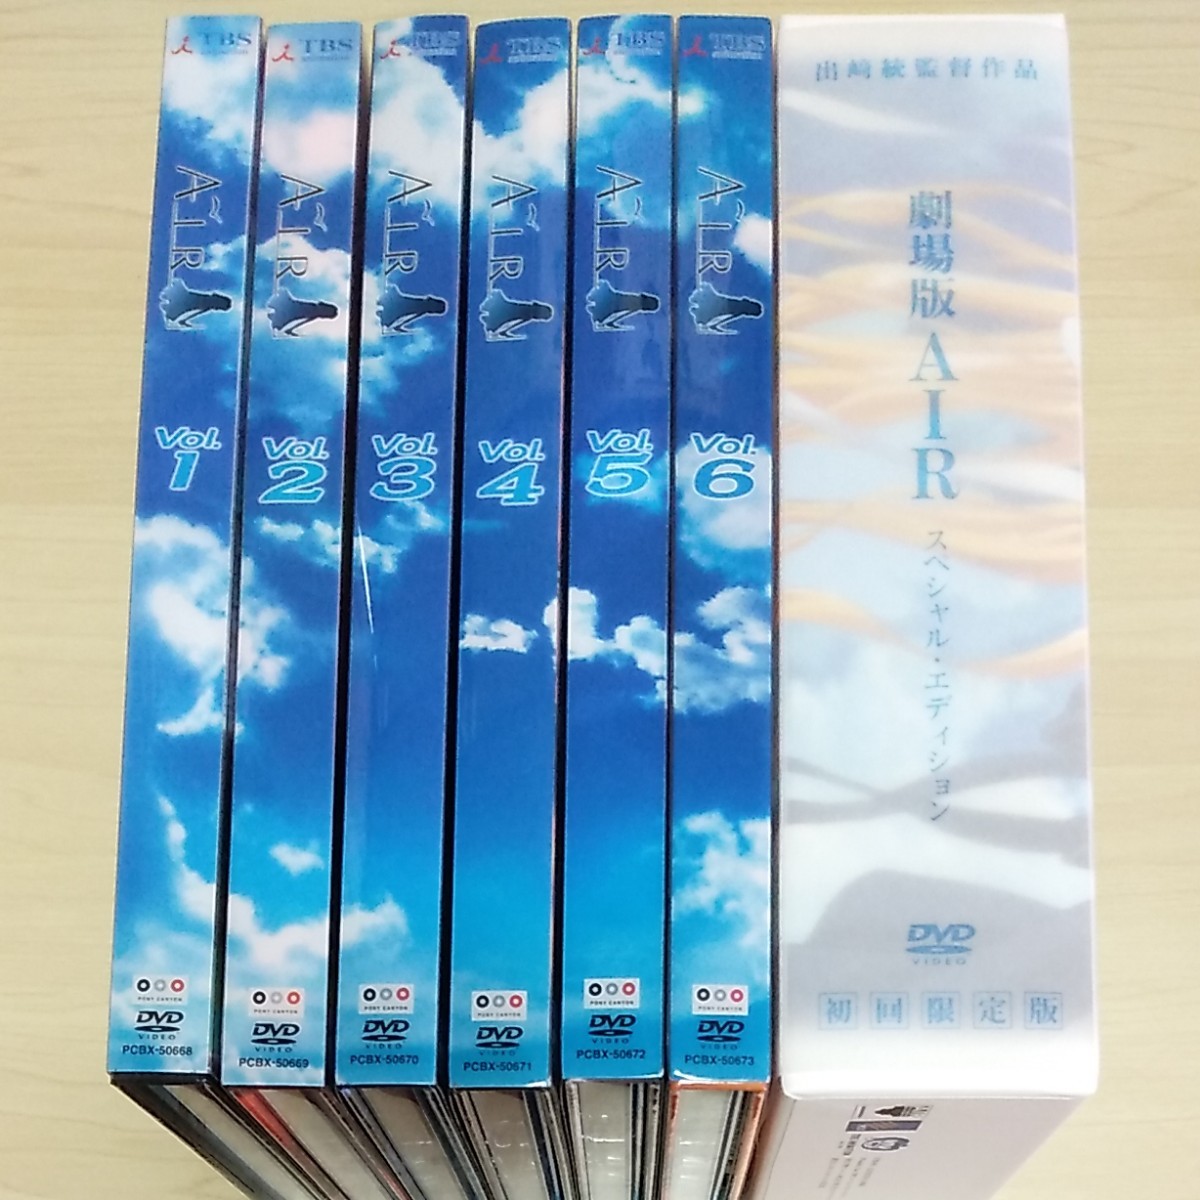 「AIR〈初回限定版〉」1～6 巻 劇場版 AIR スペシャル・エディション  DVD セット